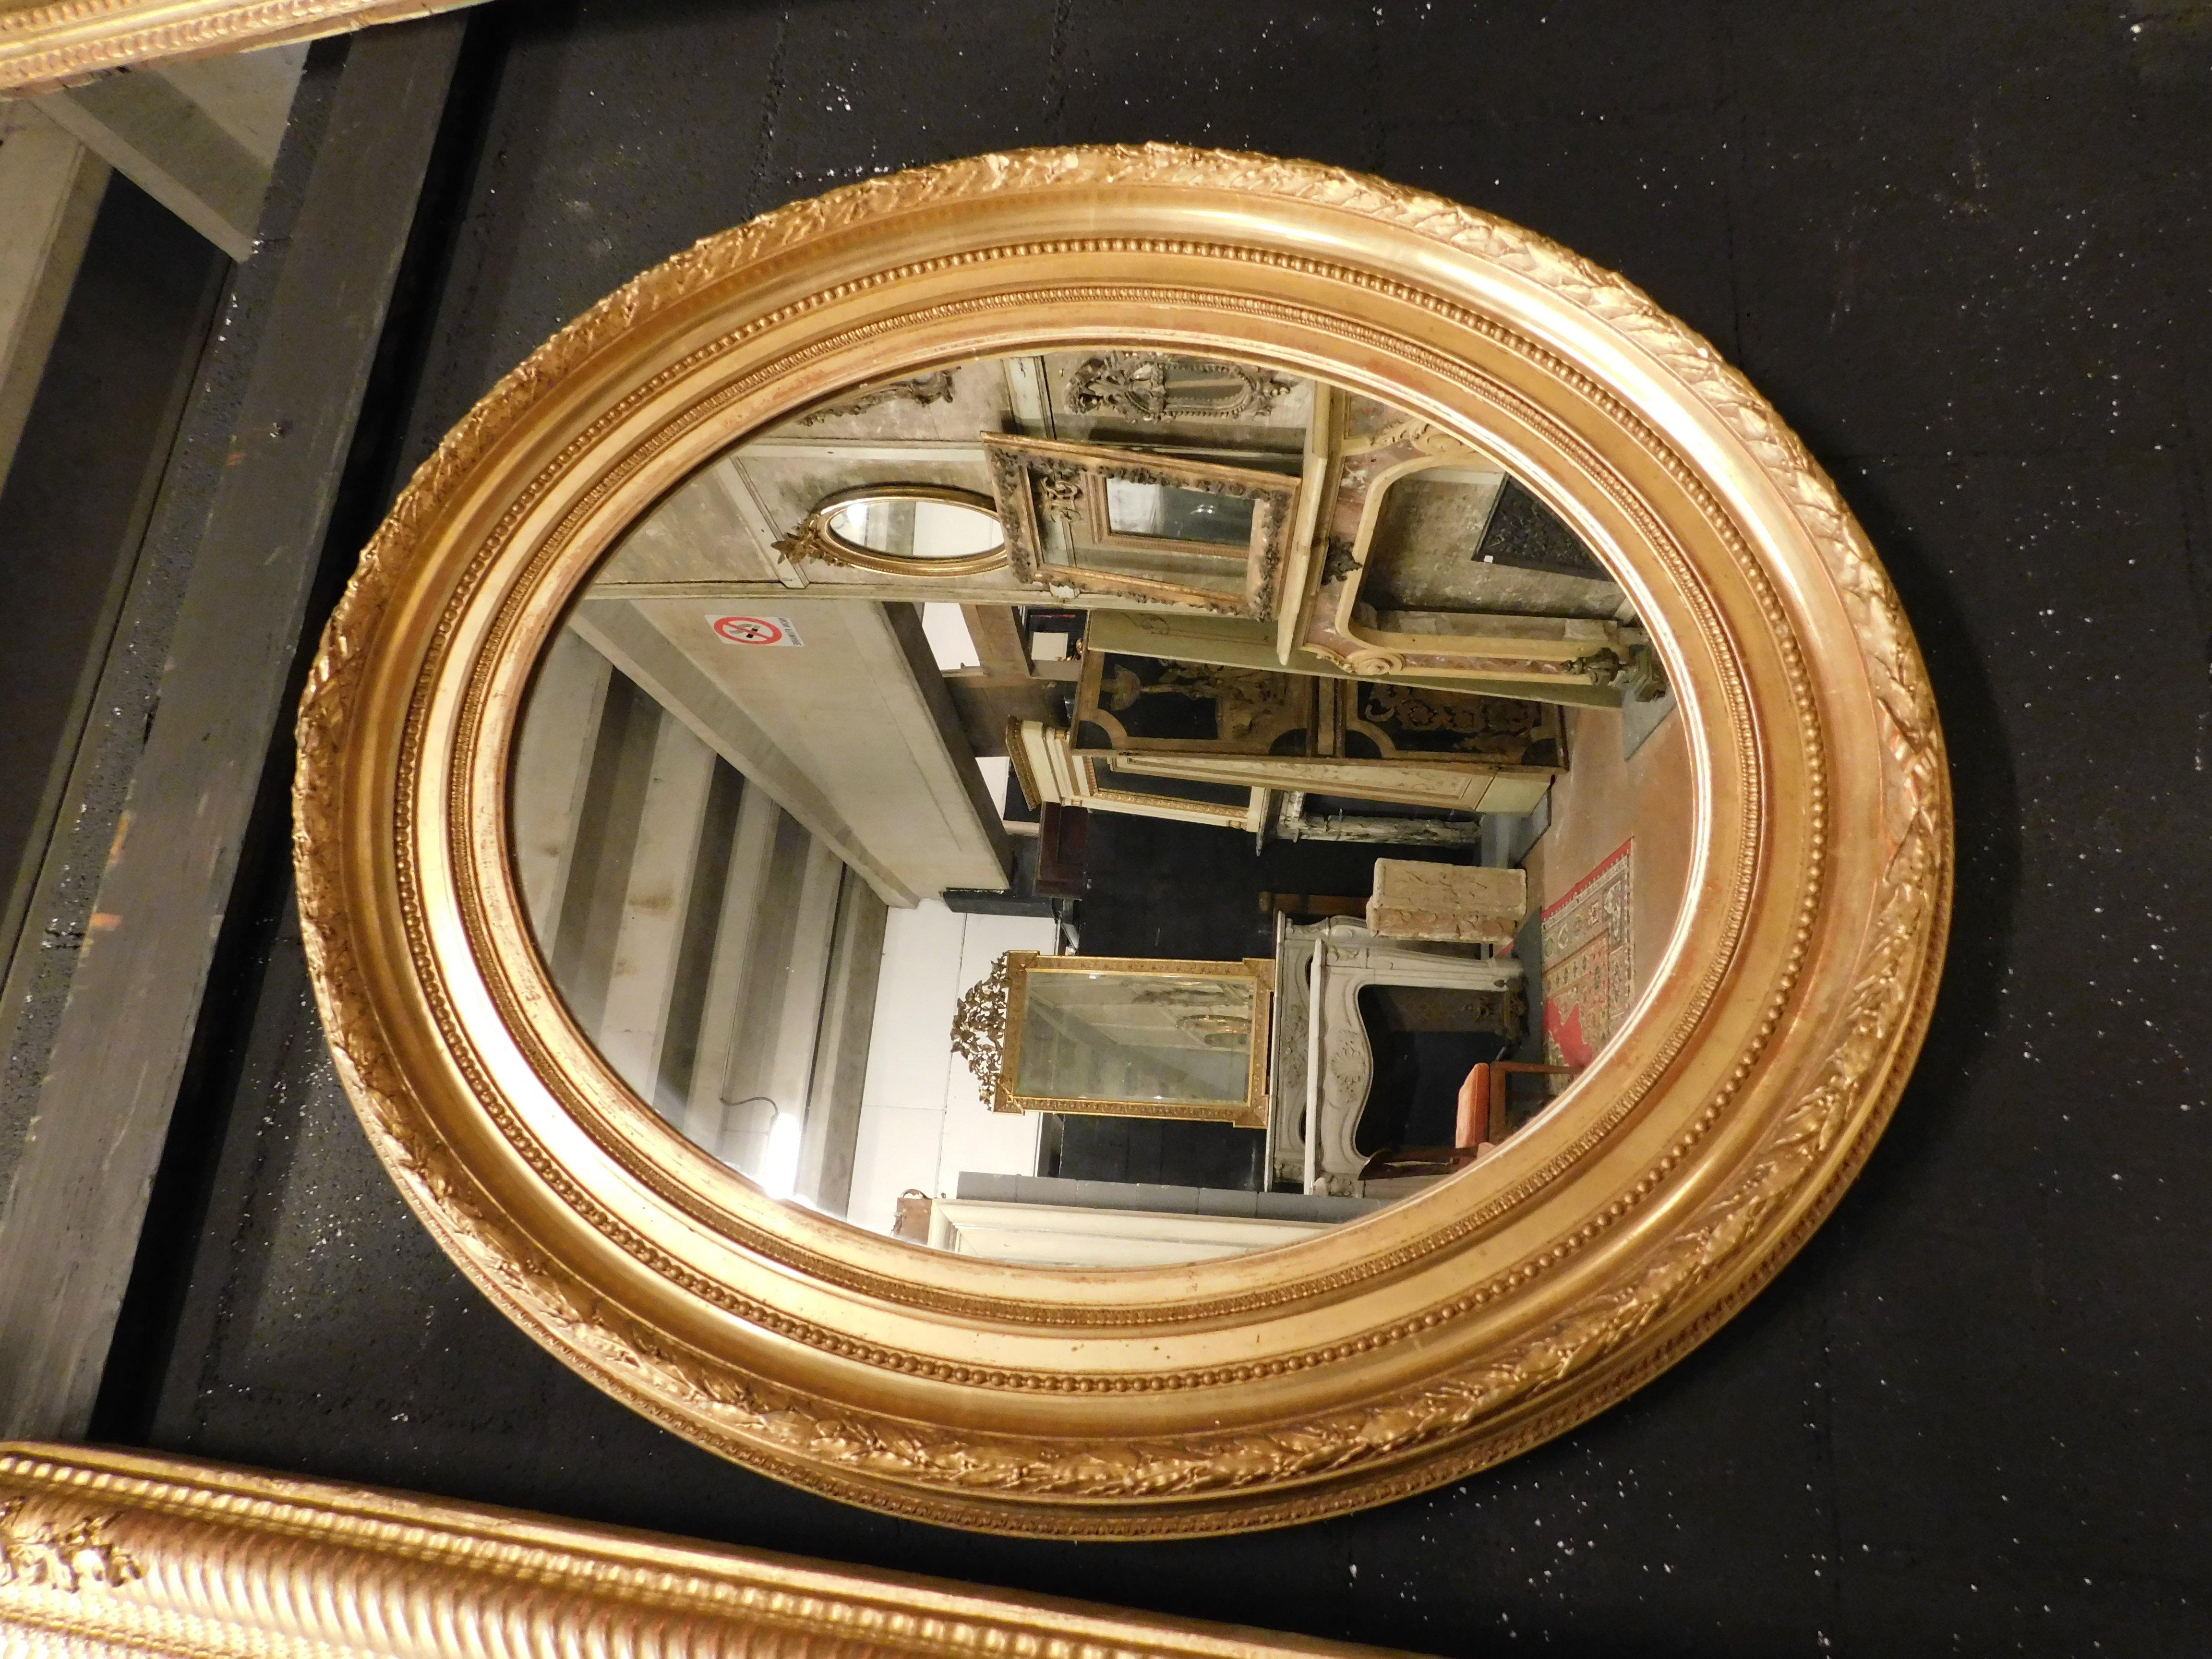 Miroir ancien ovale, avec cadre en bois sculpté et doré, double cadre, construit au 19ème siècle en Italie, idéal pour placer au mur ou sur un meuble, ou comme contraste dans un environnement moderne mais luxueux, mesurant w 70 x H 80 cm , peut être